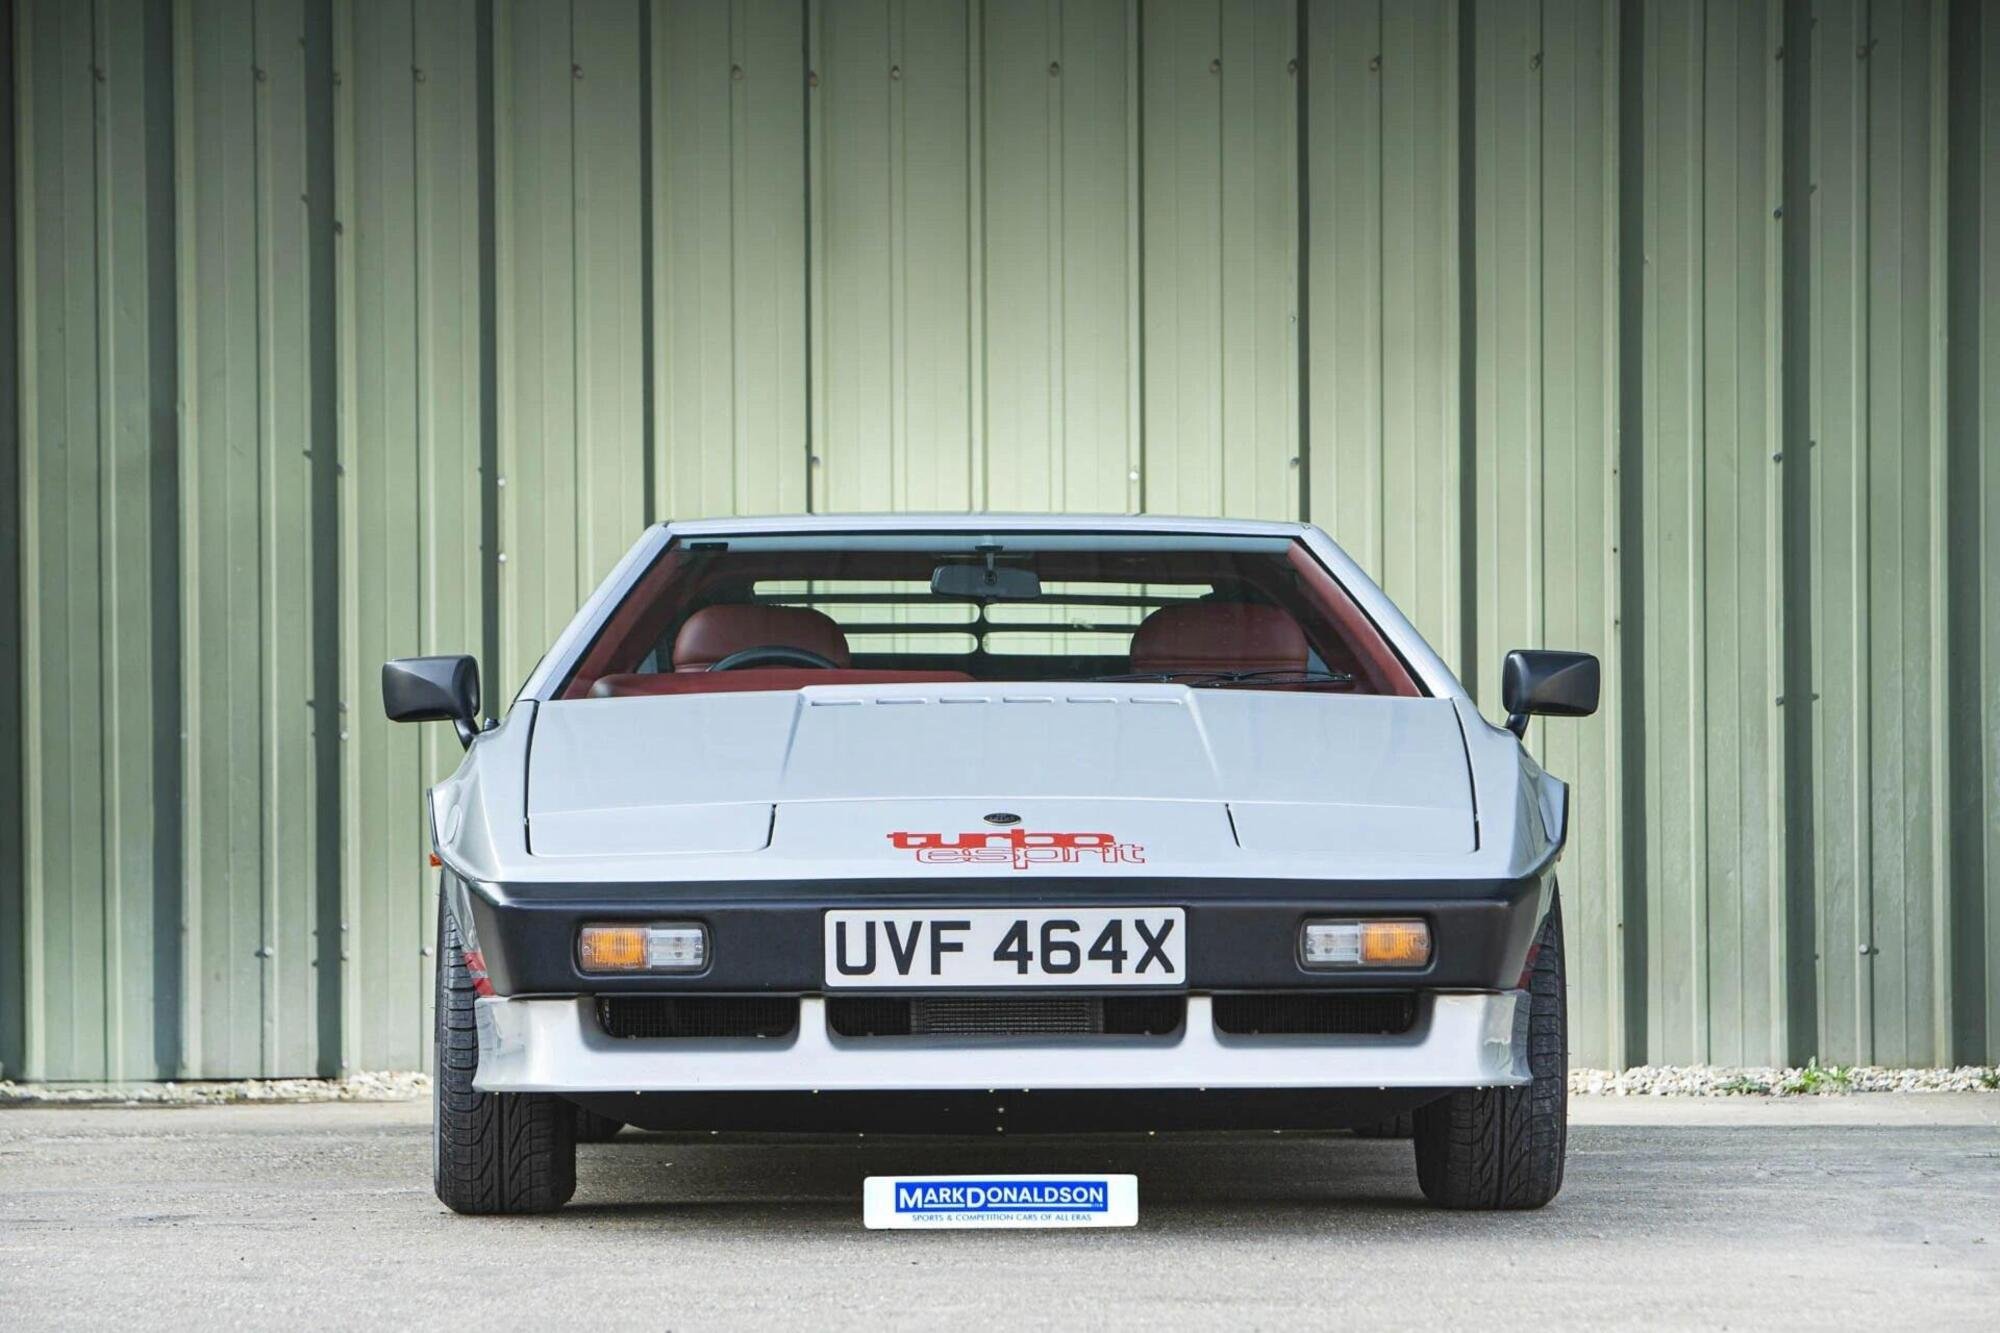 Lotus Esprit Turbo: in vendita quella di Colin Chapman